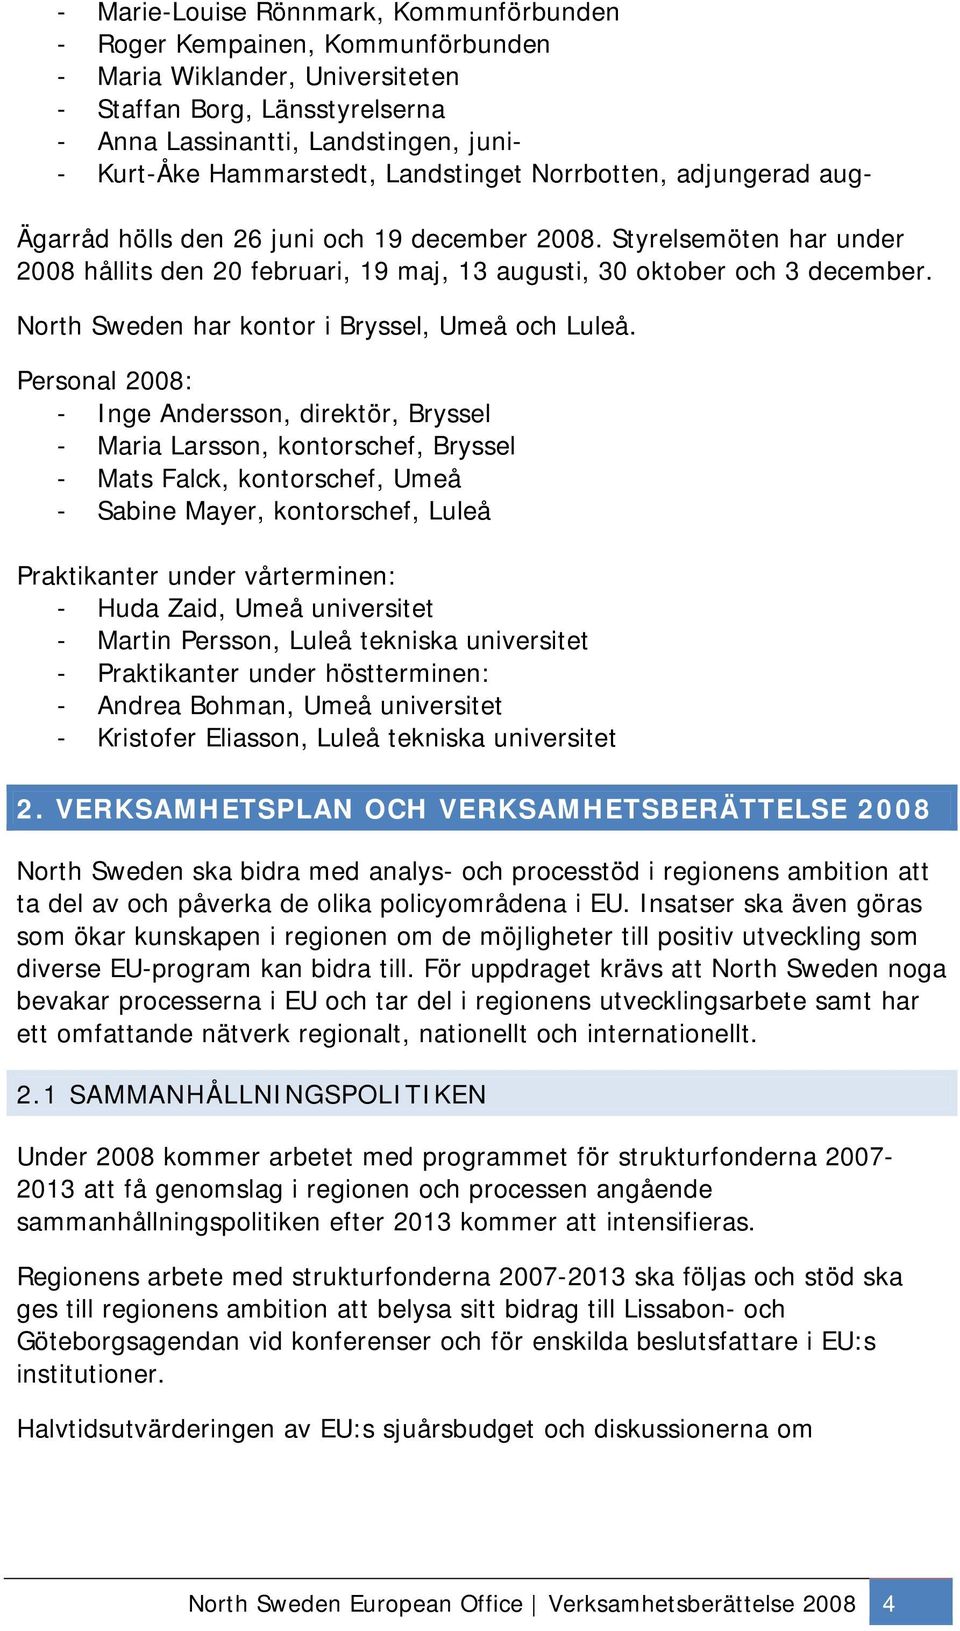 Styrelsemöten har under 2008 hållits den 20 februari, 19 maj, 13 augusti, 30 oktober och 3 december. North Sweden har kontor i Bryssel, Umeå och Luleå.